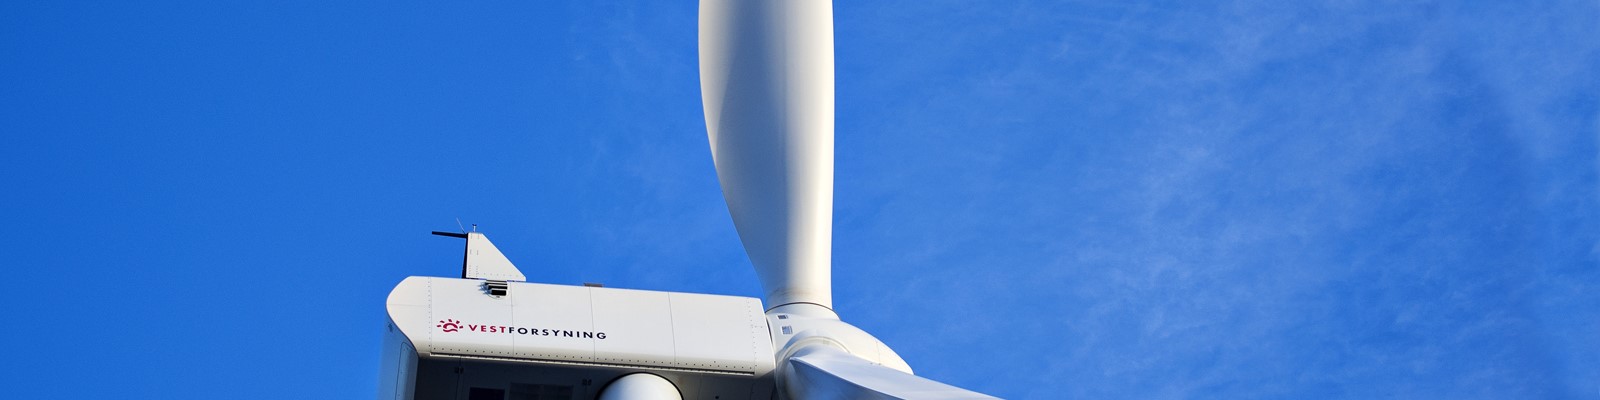 Nærbillede af vindmølle i Gedmose med Vestforsyning logo og blå himmel